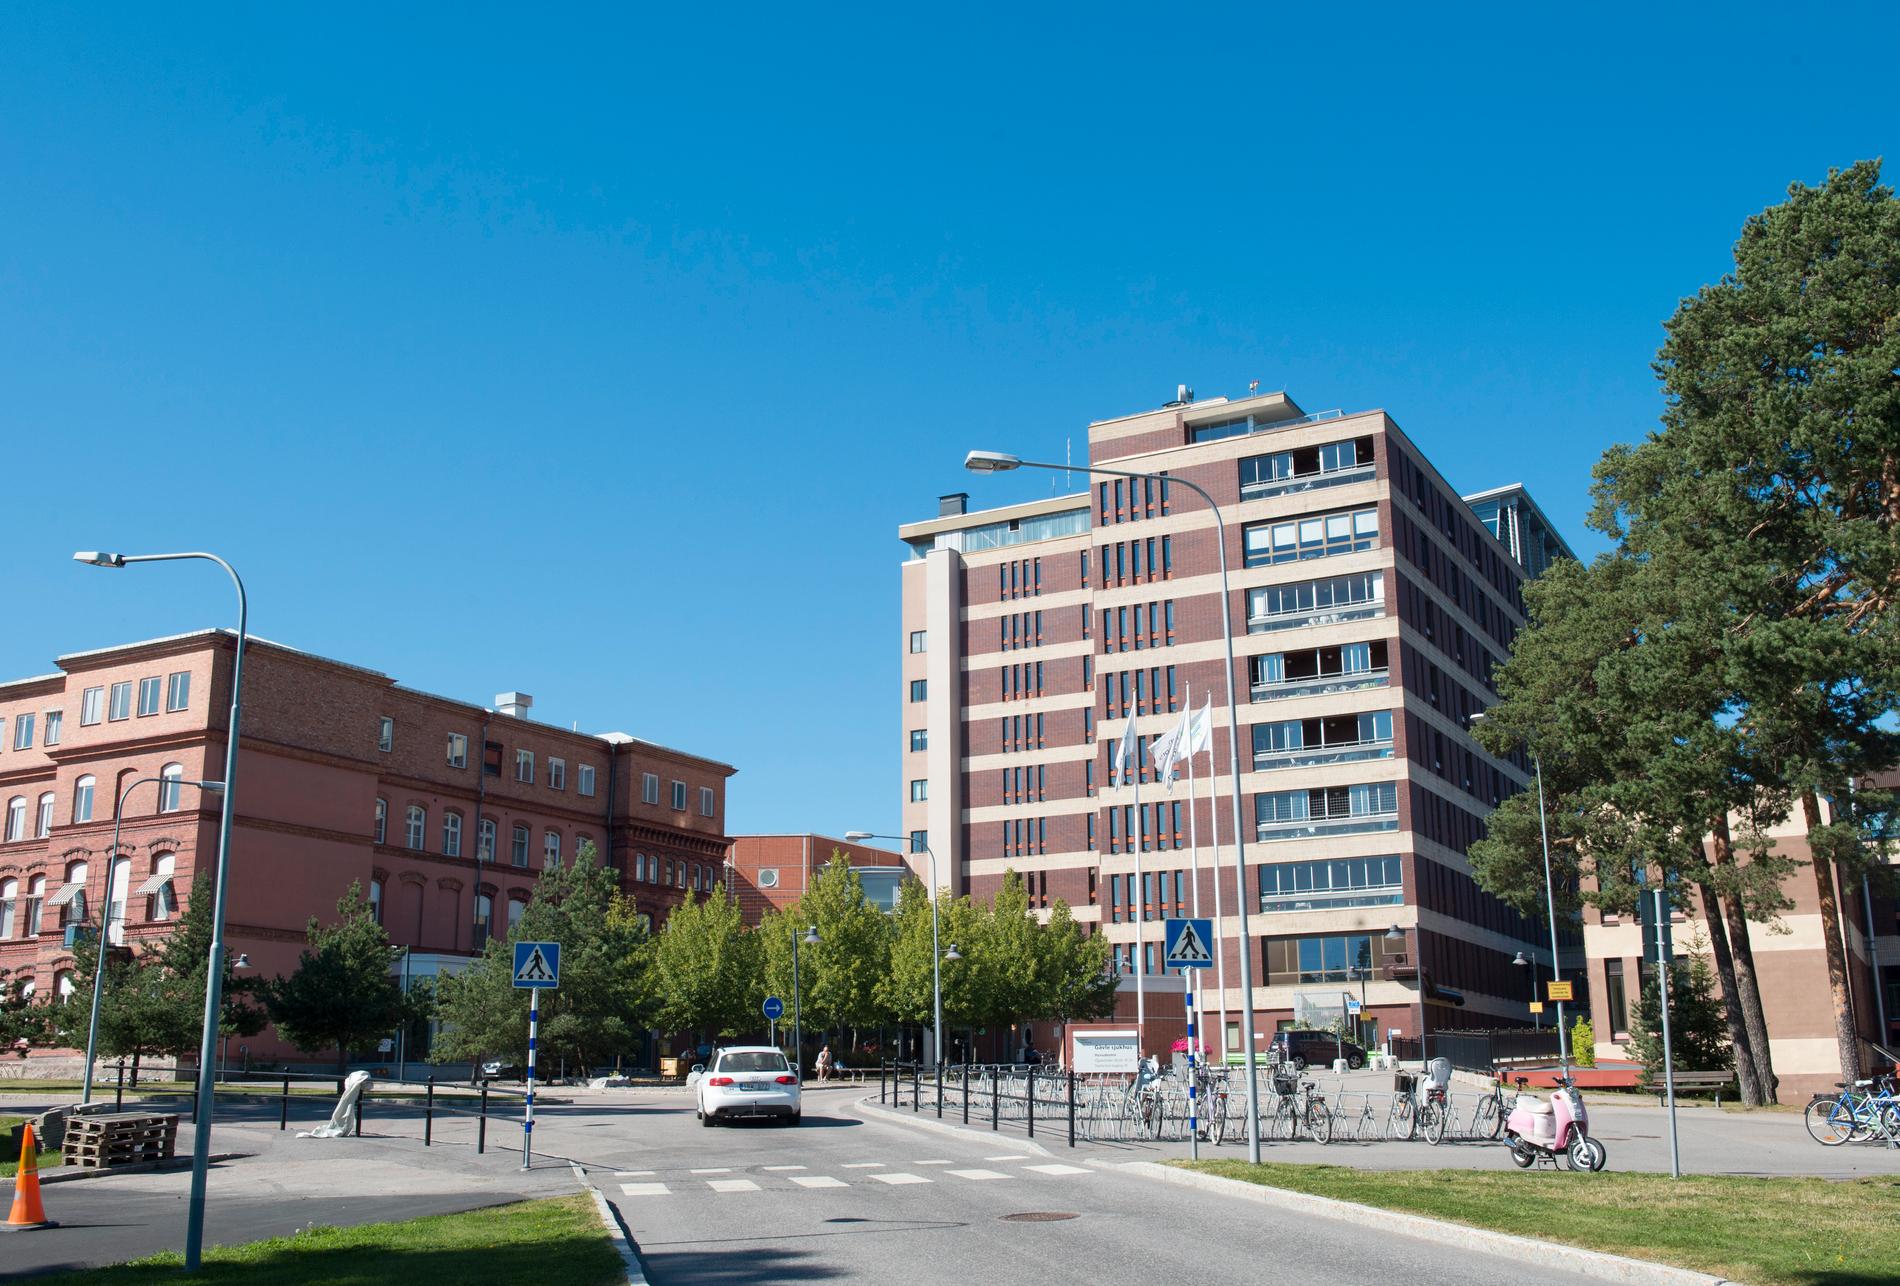 Sjukhuset i Gävle. Arkivbild.